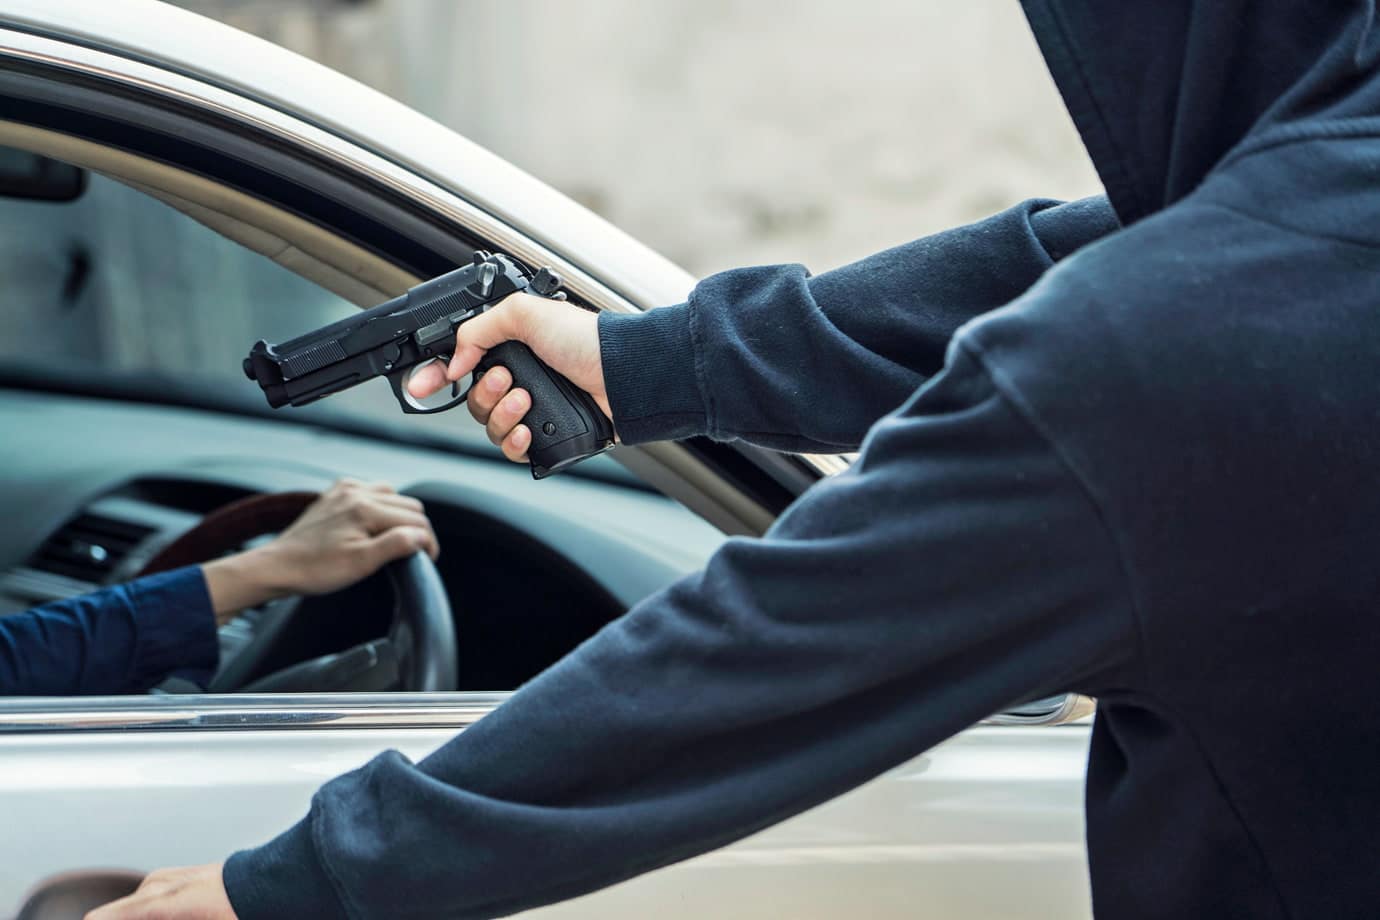 Na imagem, uma pessoa apontando uma arma para outra pessoa dentro de um carro